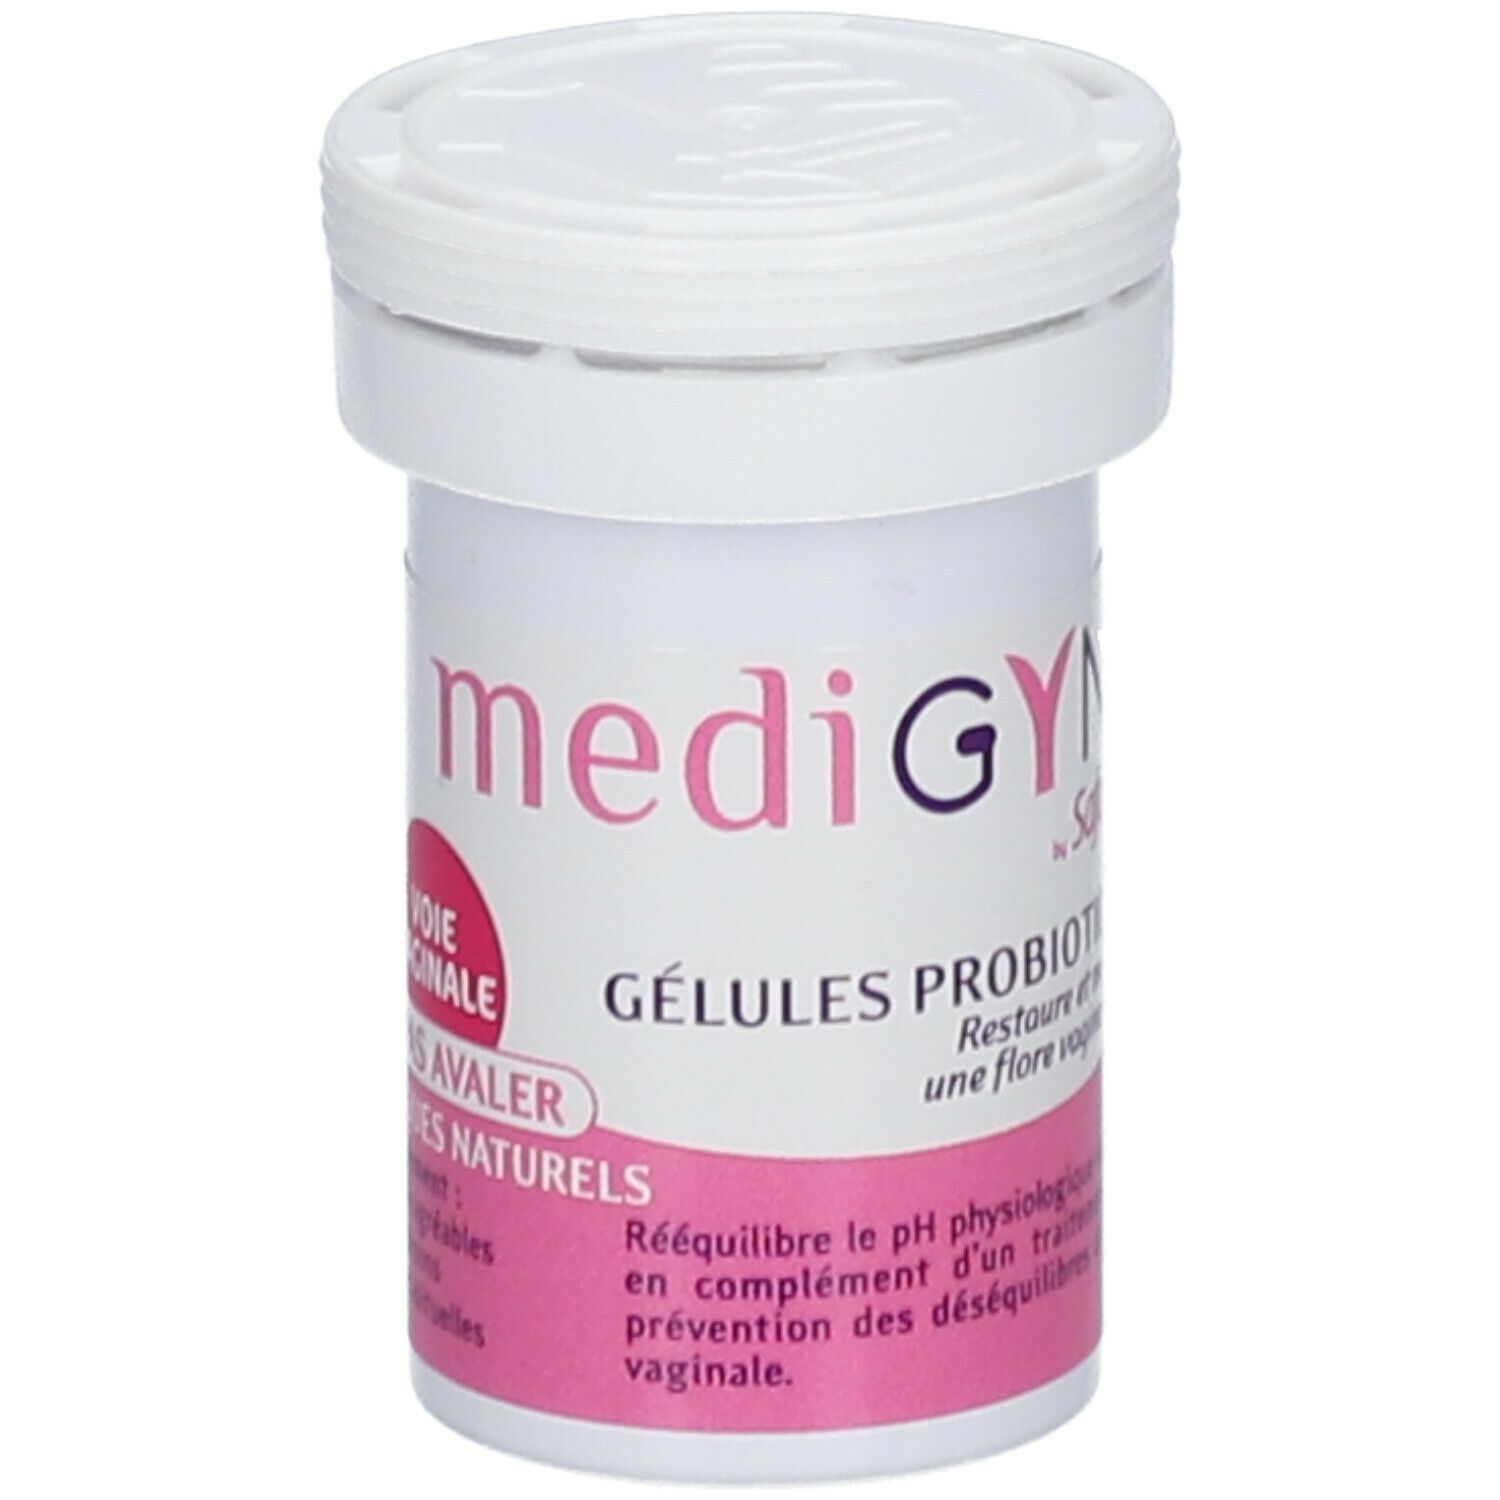 MediGYNE by Saforelle Gélules probiotiques